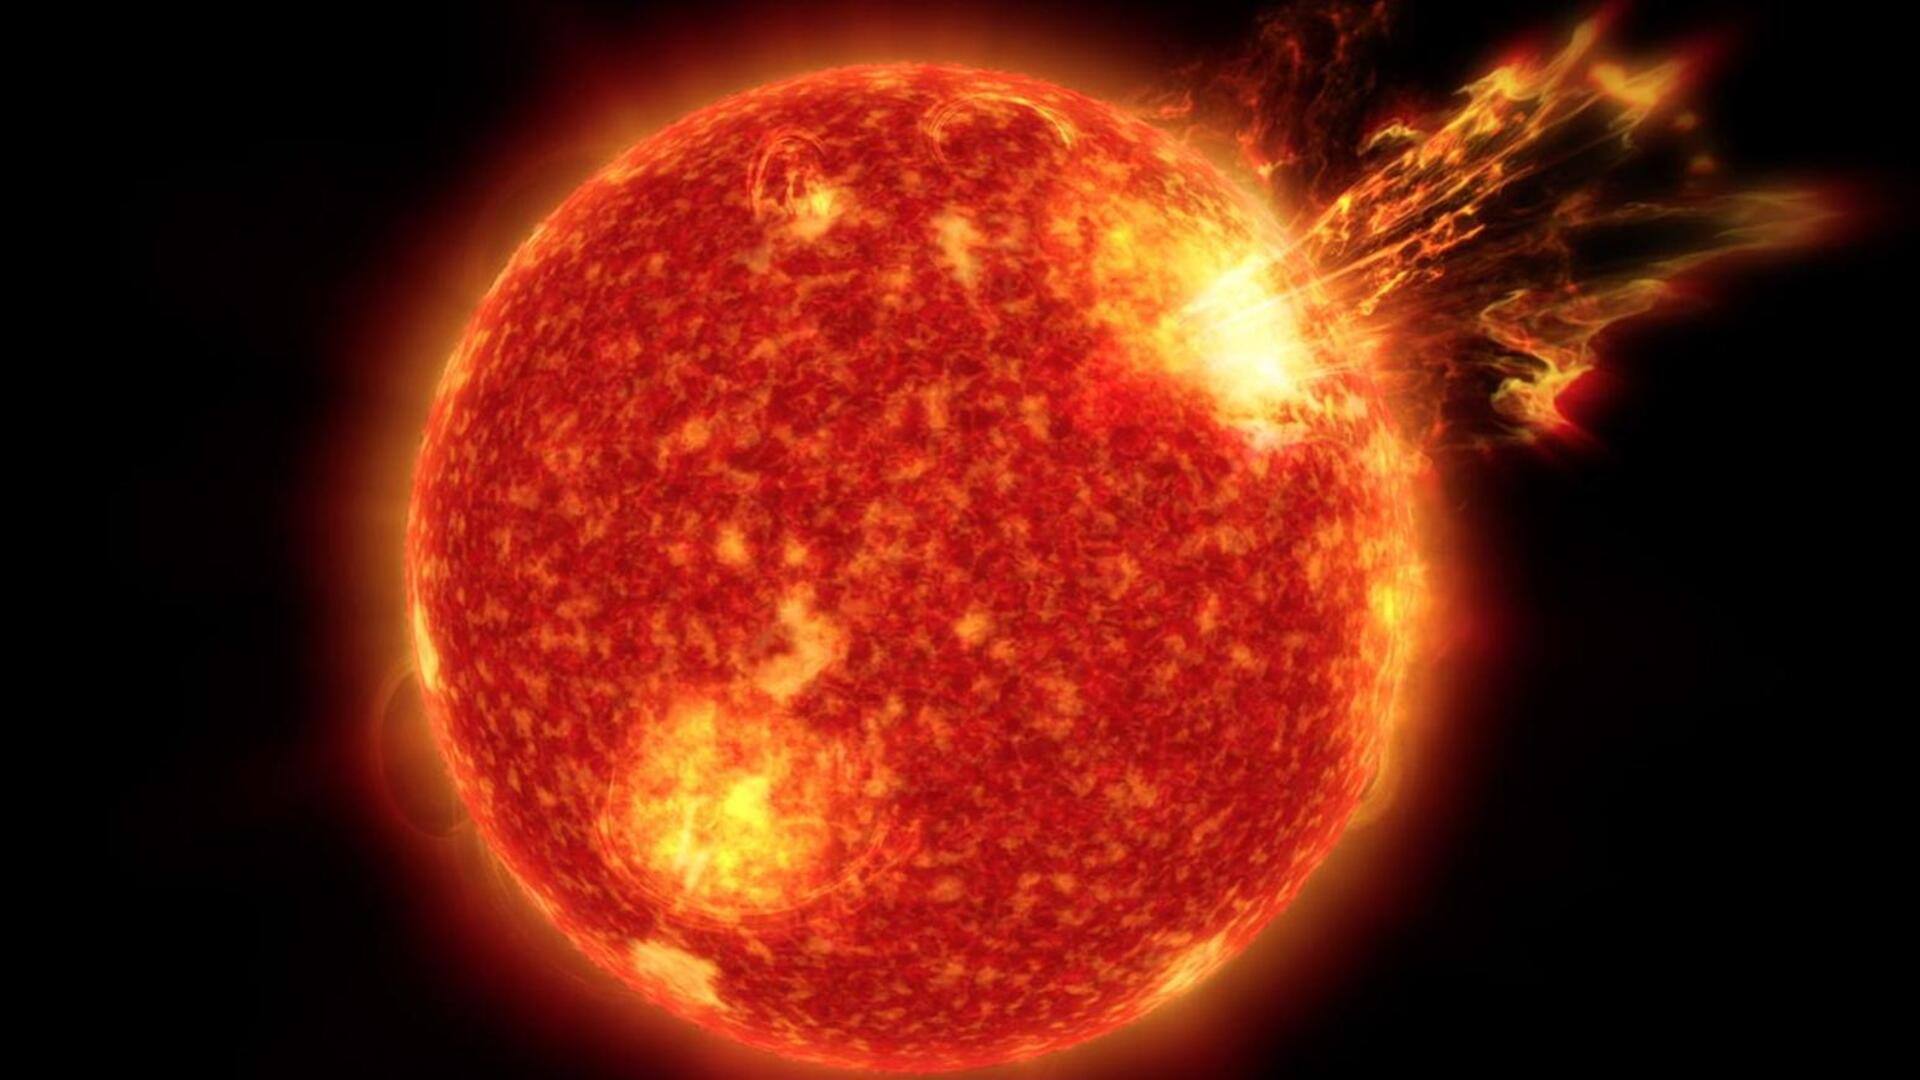 सूर्य पर दिखा बड़ा सनस्पॉट, अगले हफ्ते पृथ्वी पर आ सकता है सौर तूफान 